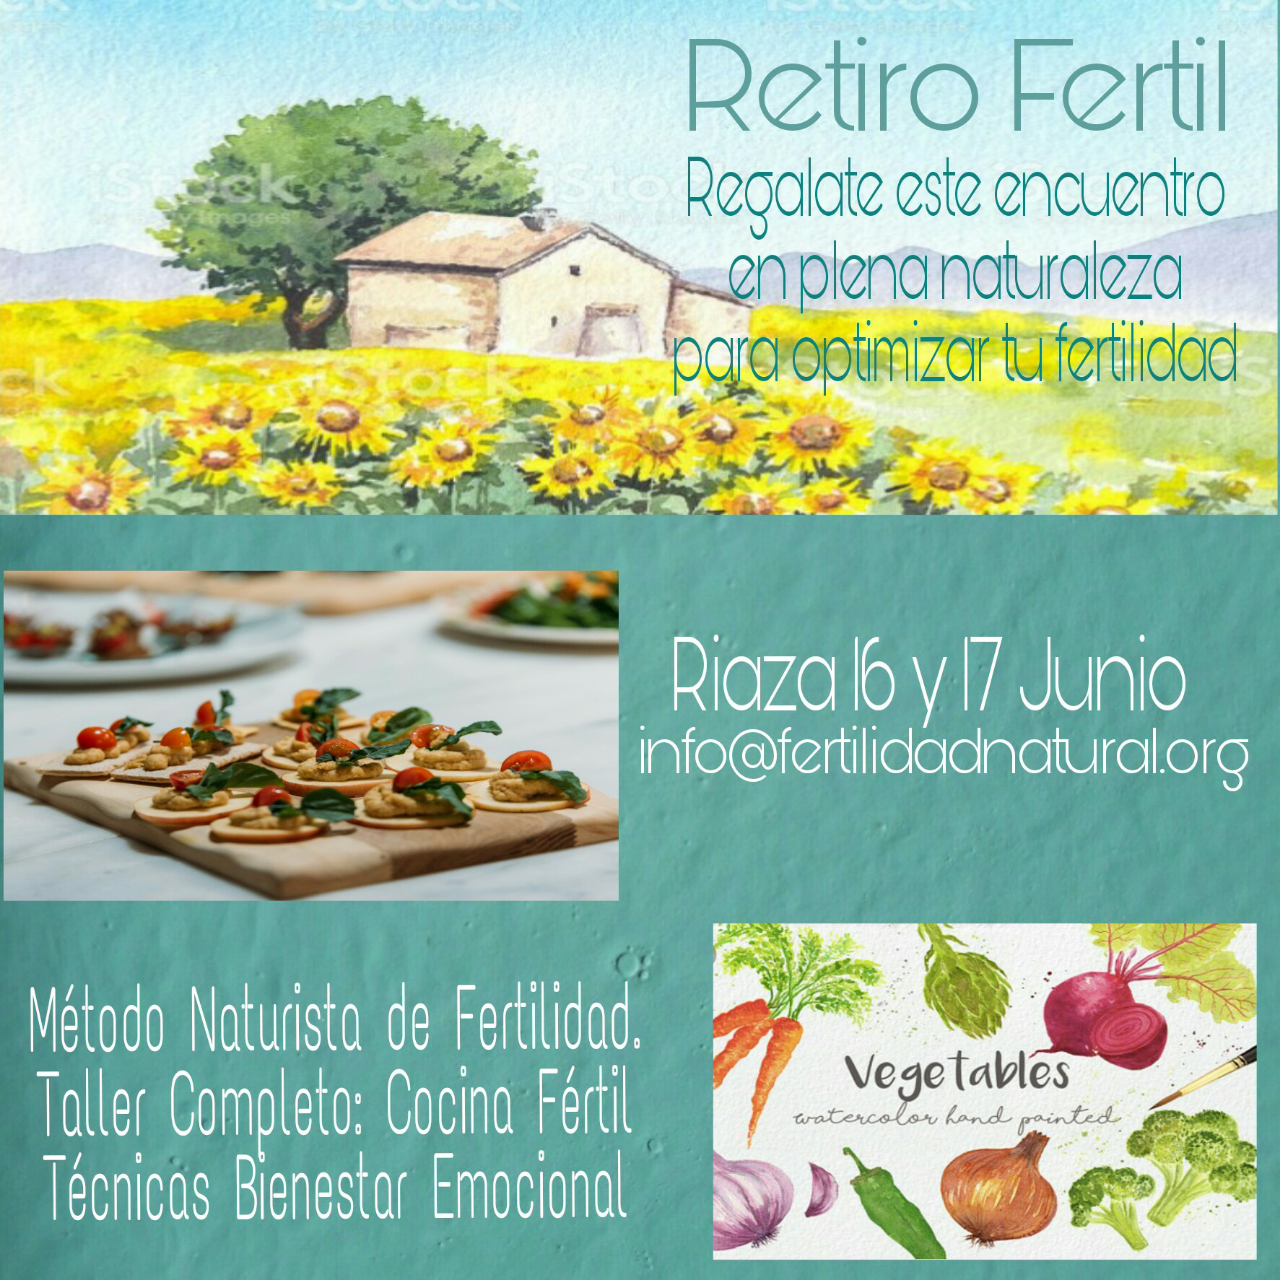 Retiro Fértil (Encuentro Fertilidad Natural) 16 y 17 junio de 2018